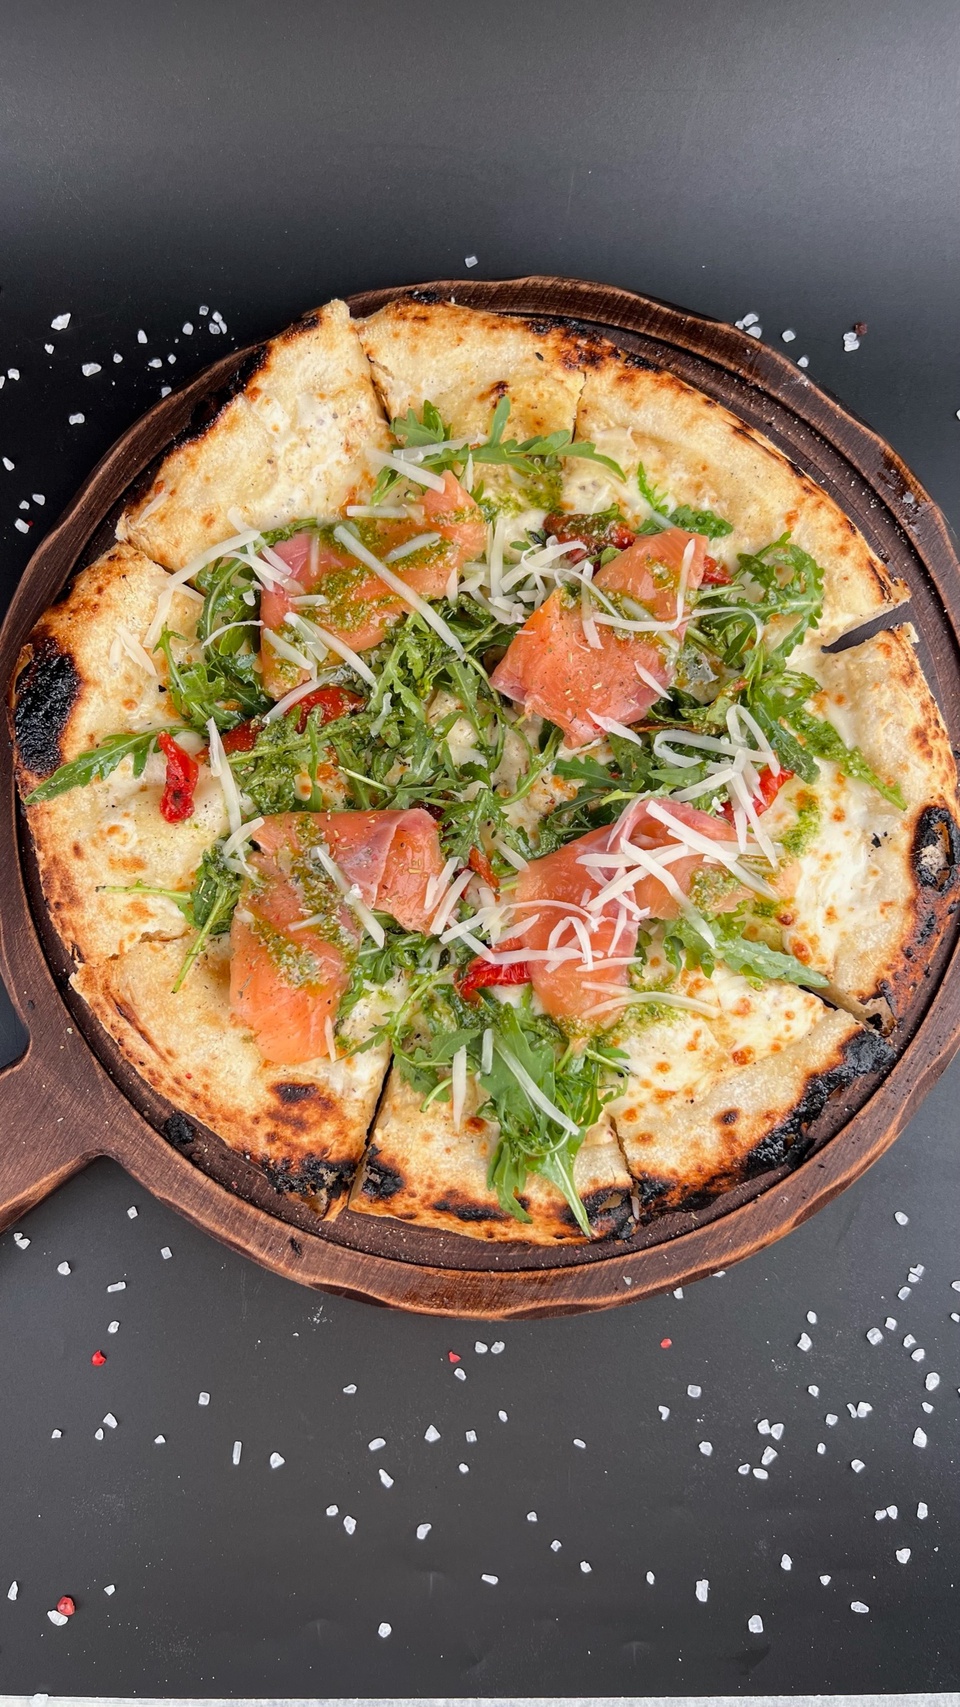 Пицца Филадельфия с лососем - 525 ₽, заказать онлайн.